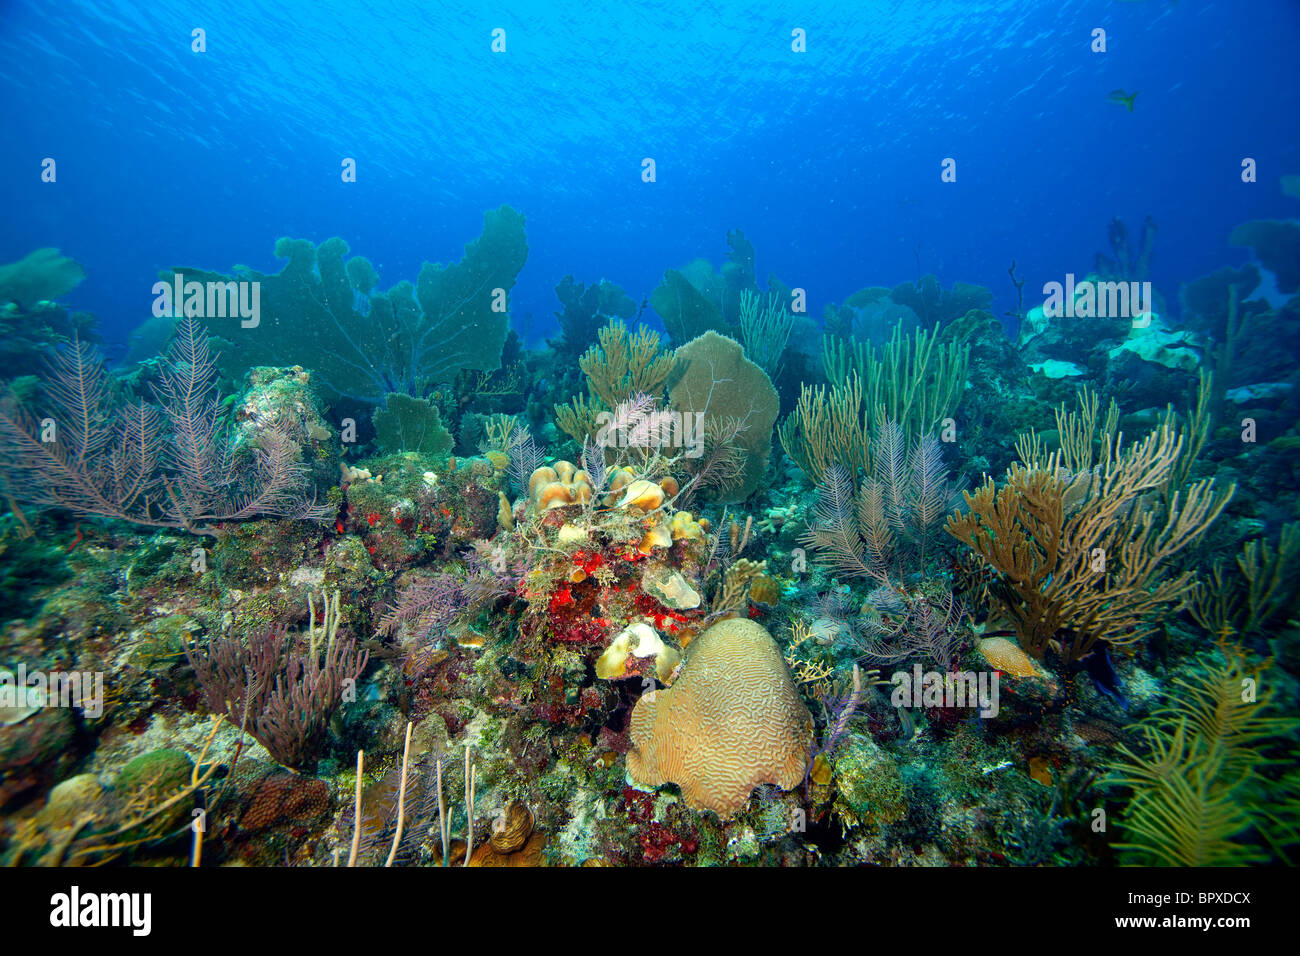 Arrecifes de Coral cubana Foto de stock